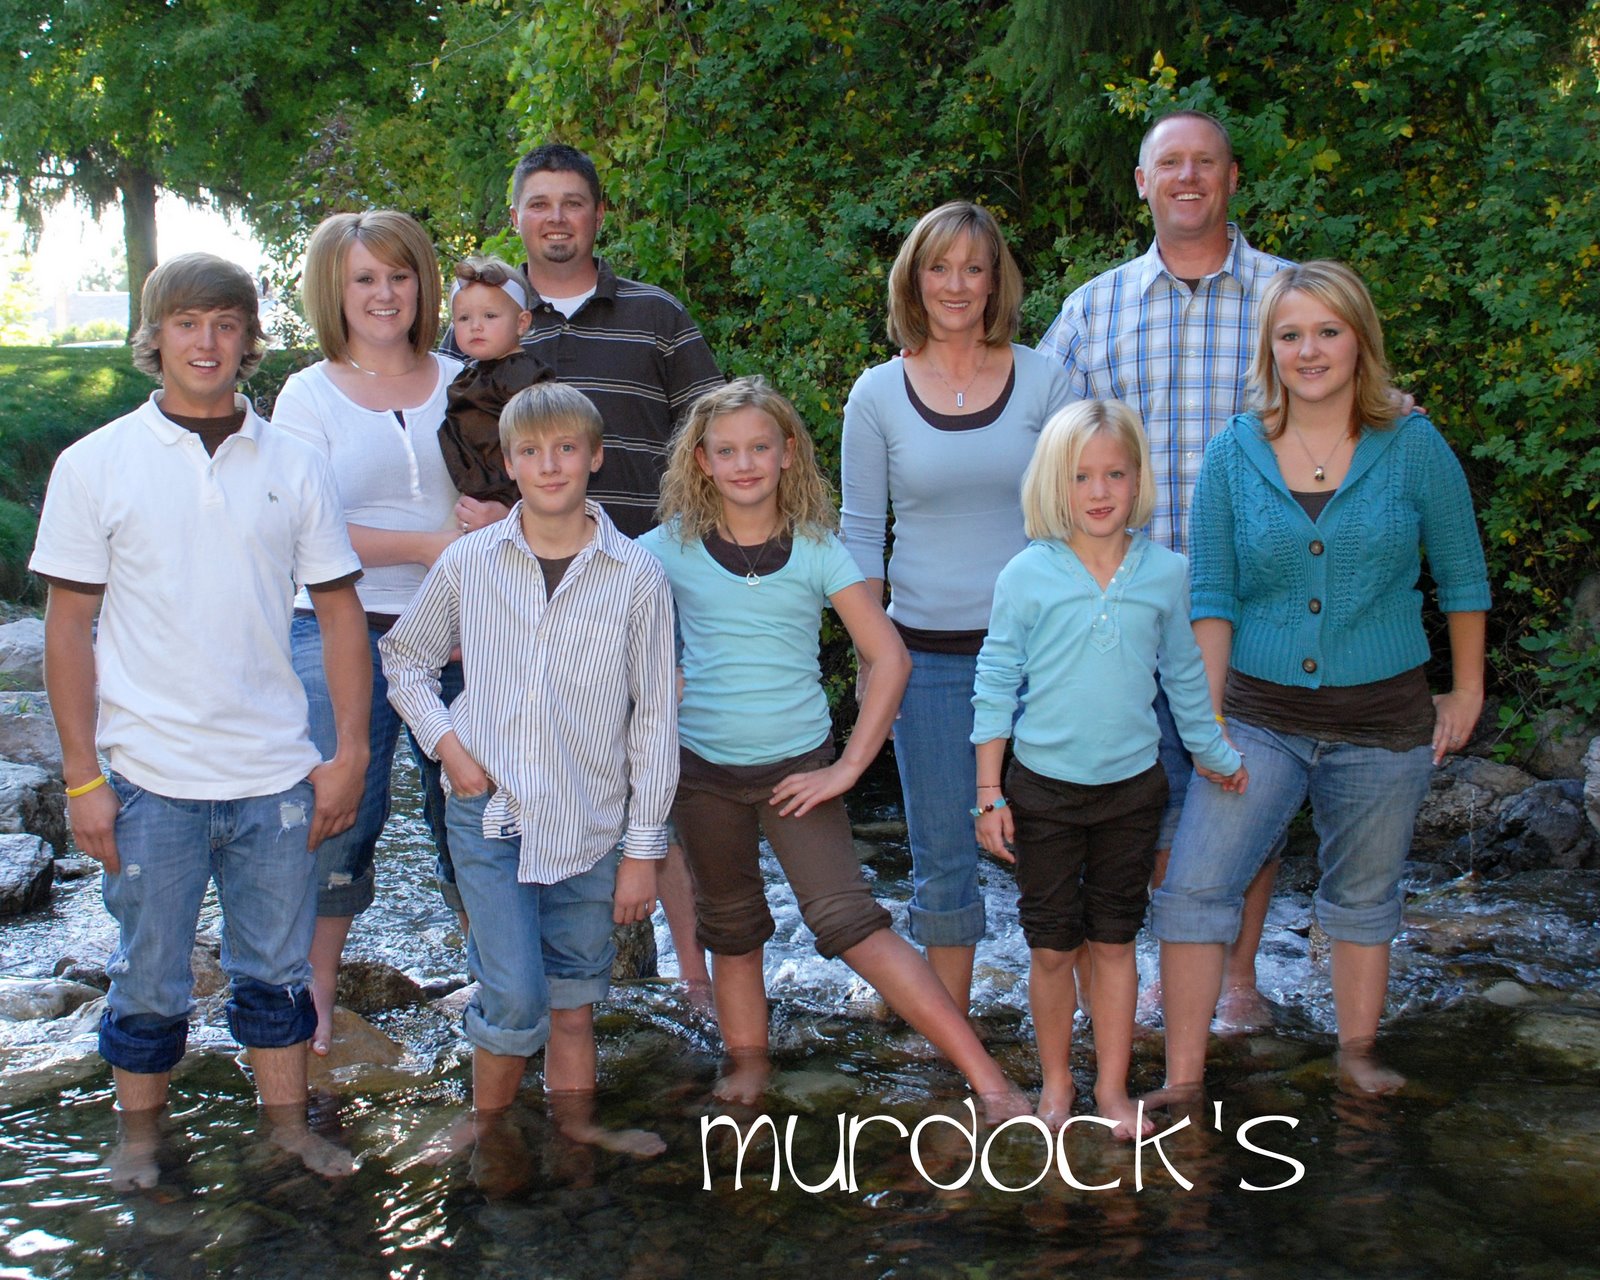 Murdock Family